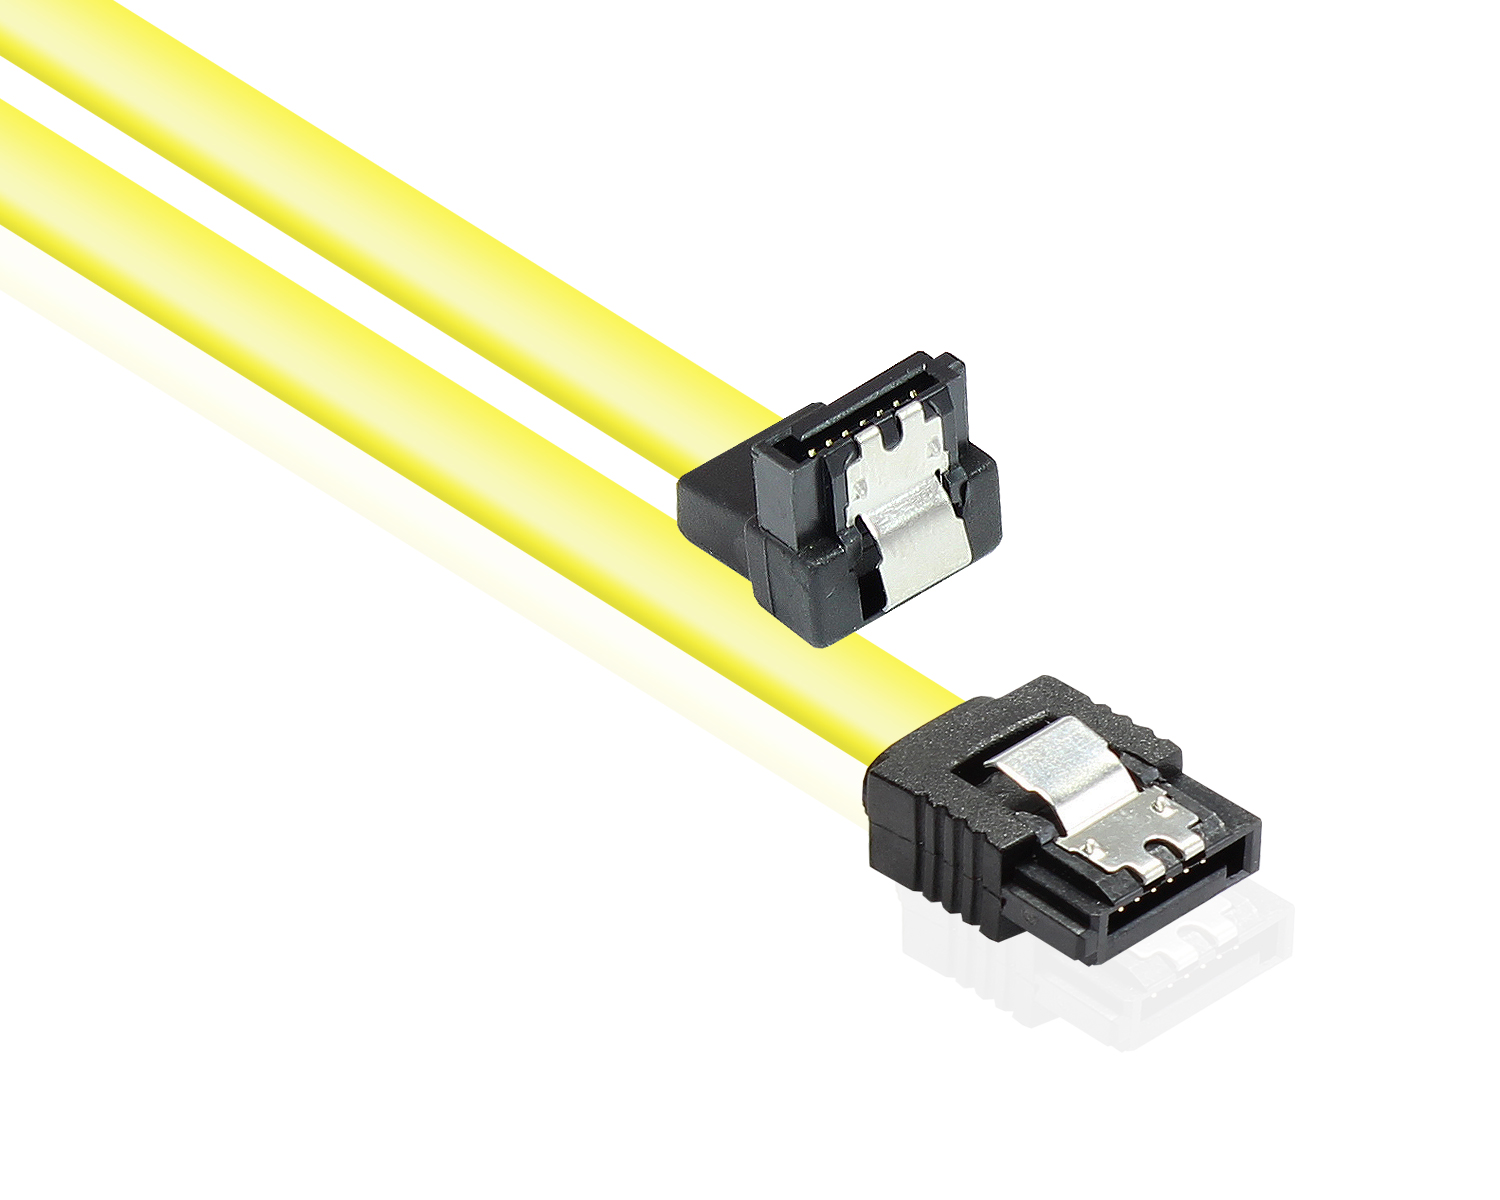 Anschlusskabel SATA 6 Gb/s mit Metallclip, einseitig gewinkelt, gelb, 1m